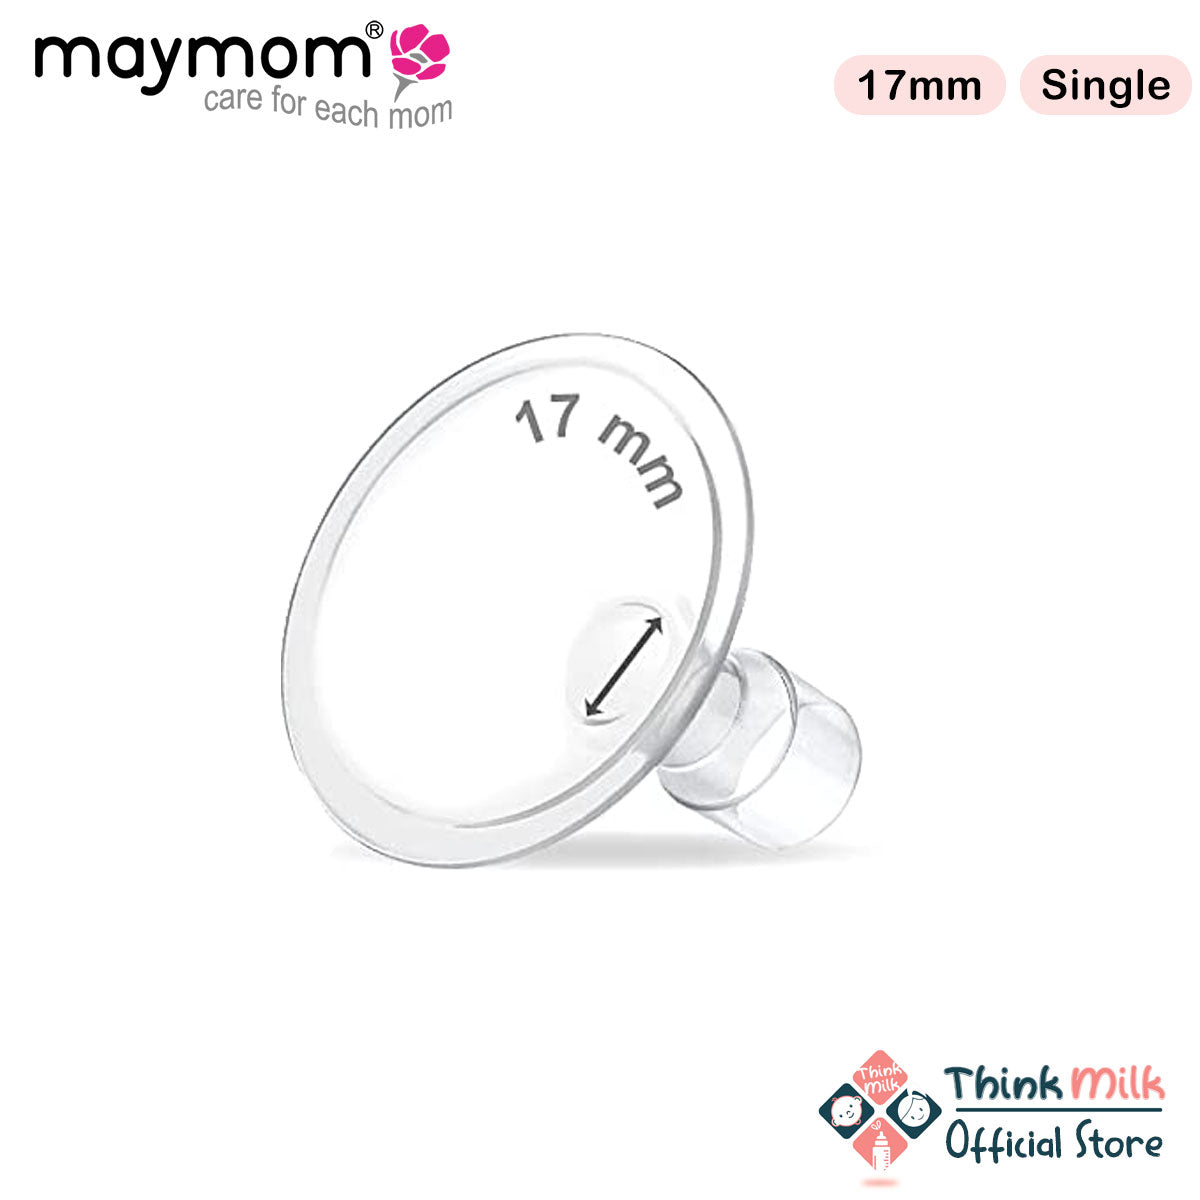 Maymom MyFit Breast Shield